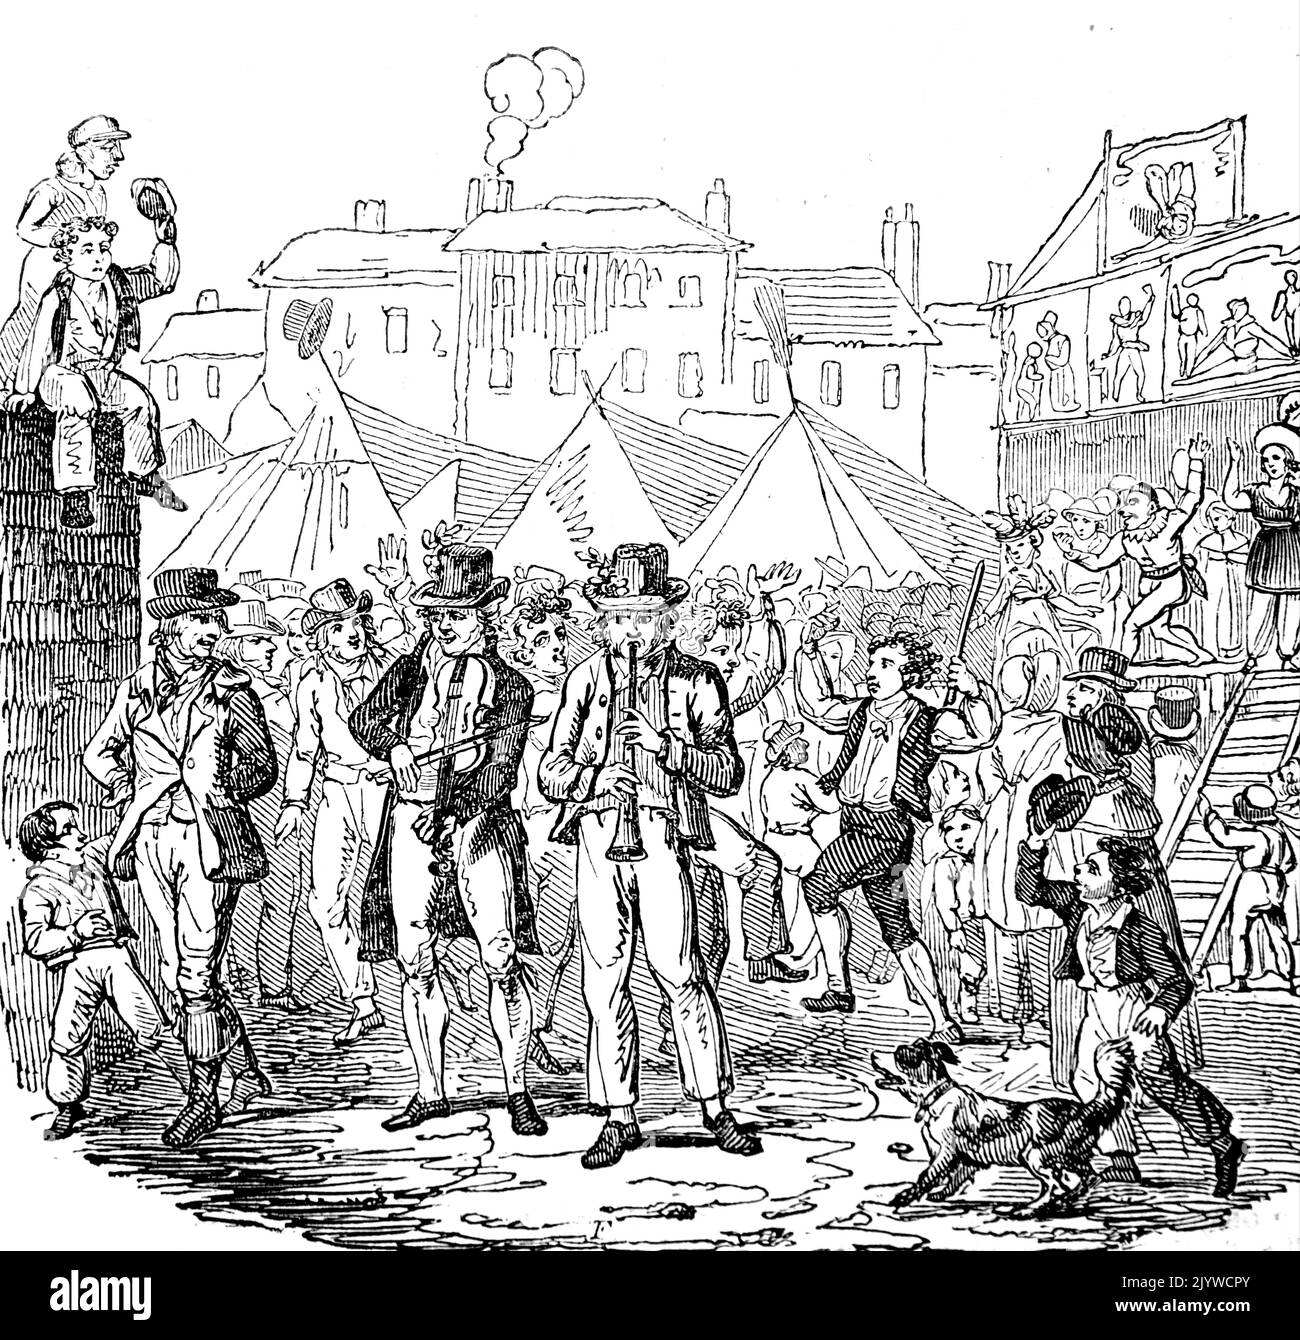 Illustration d'une foire de mars, où des serviteurs pourraient être embauchés par des familles riches. Daté du 18th siècle Banque D'Images